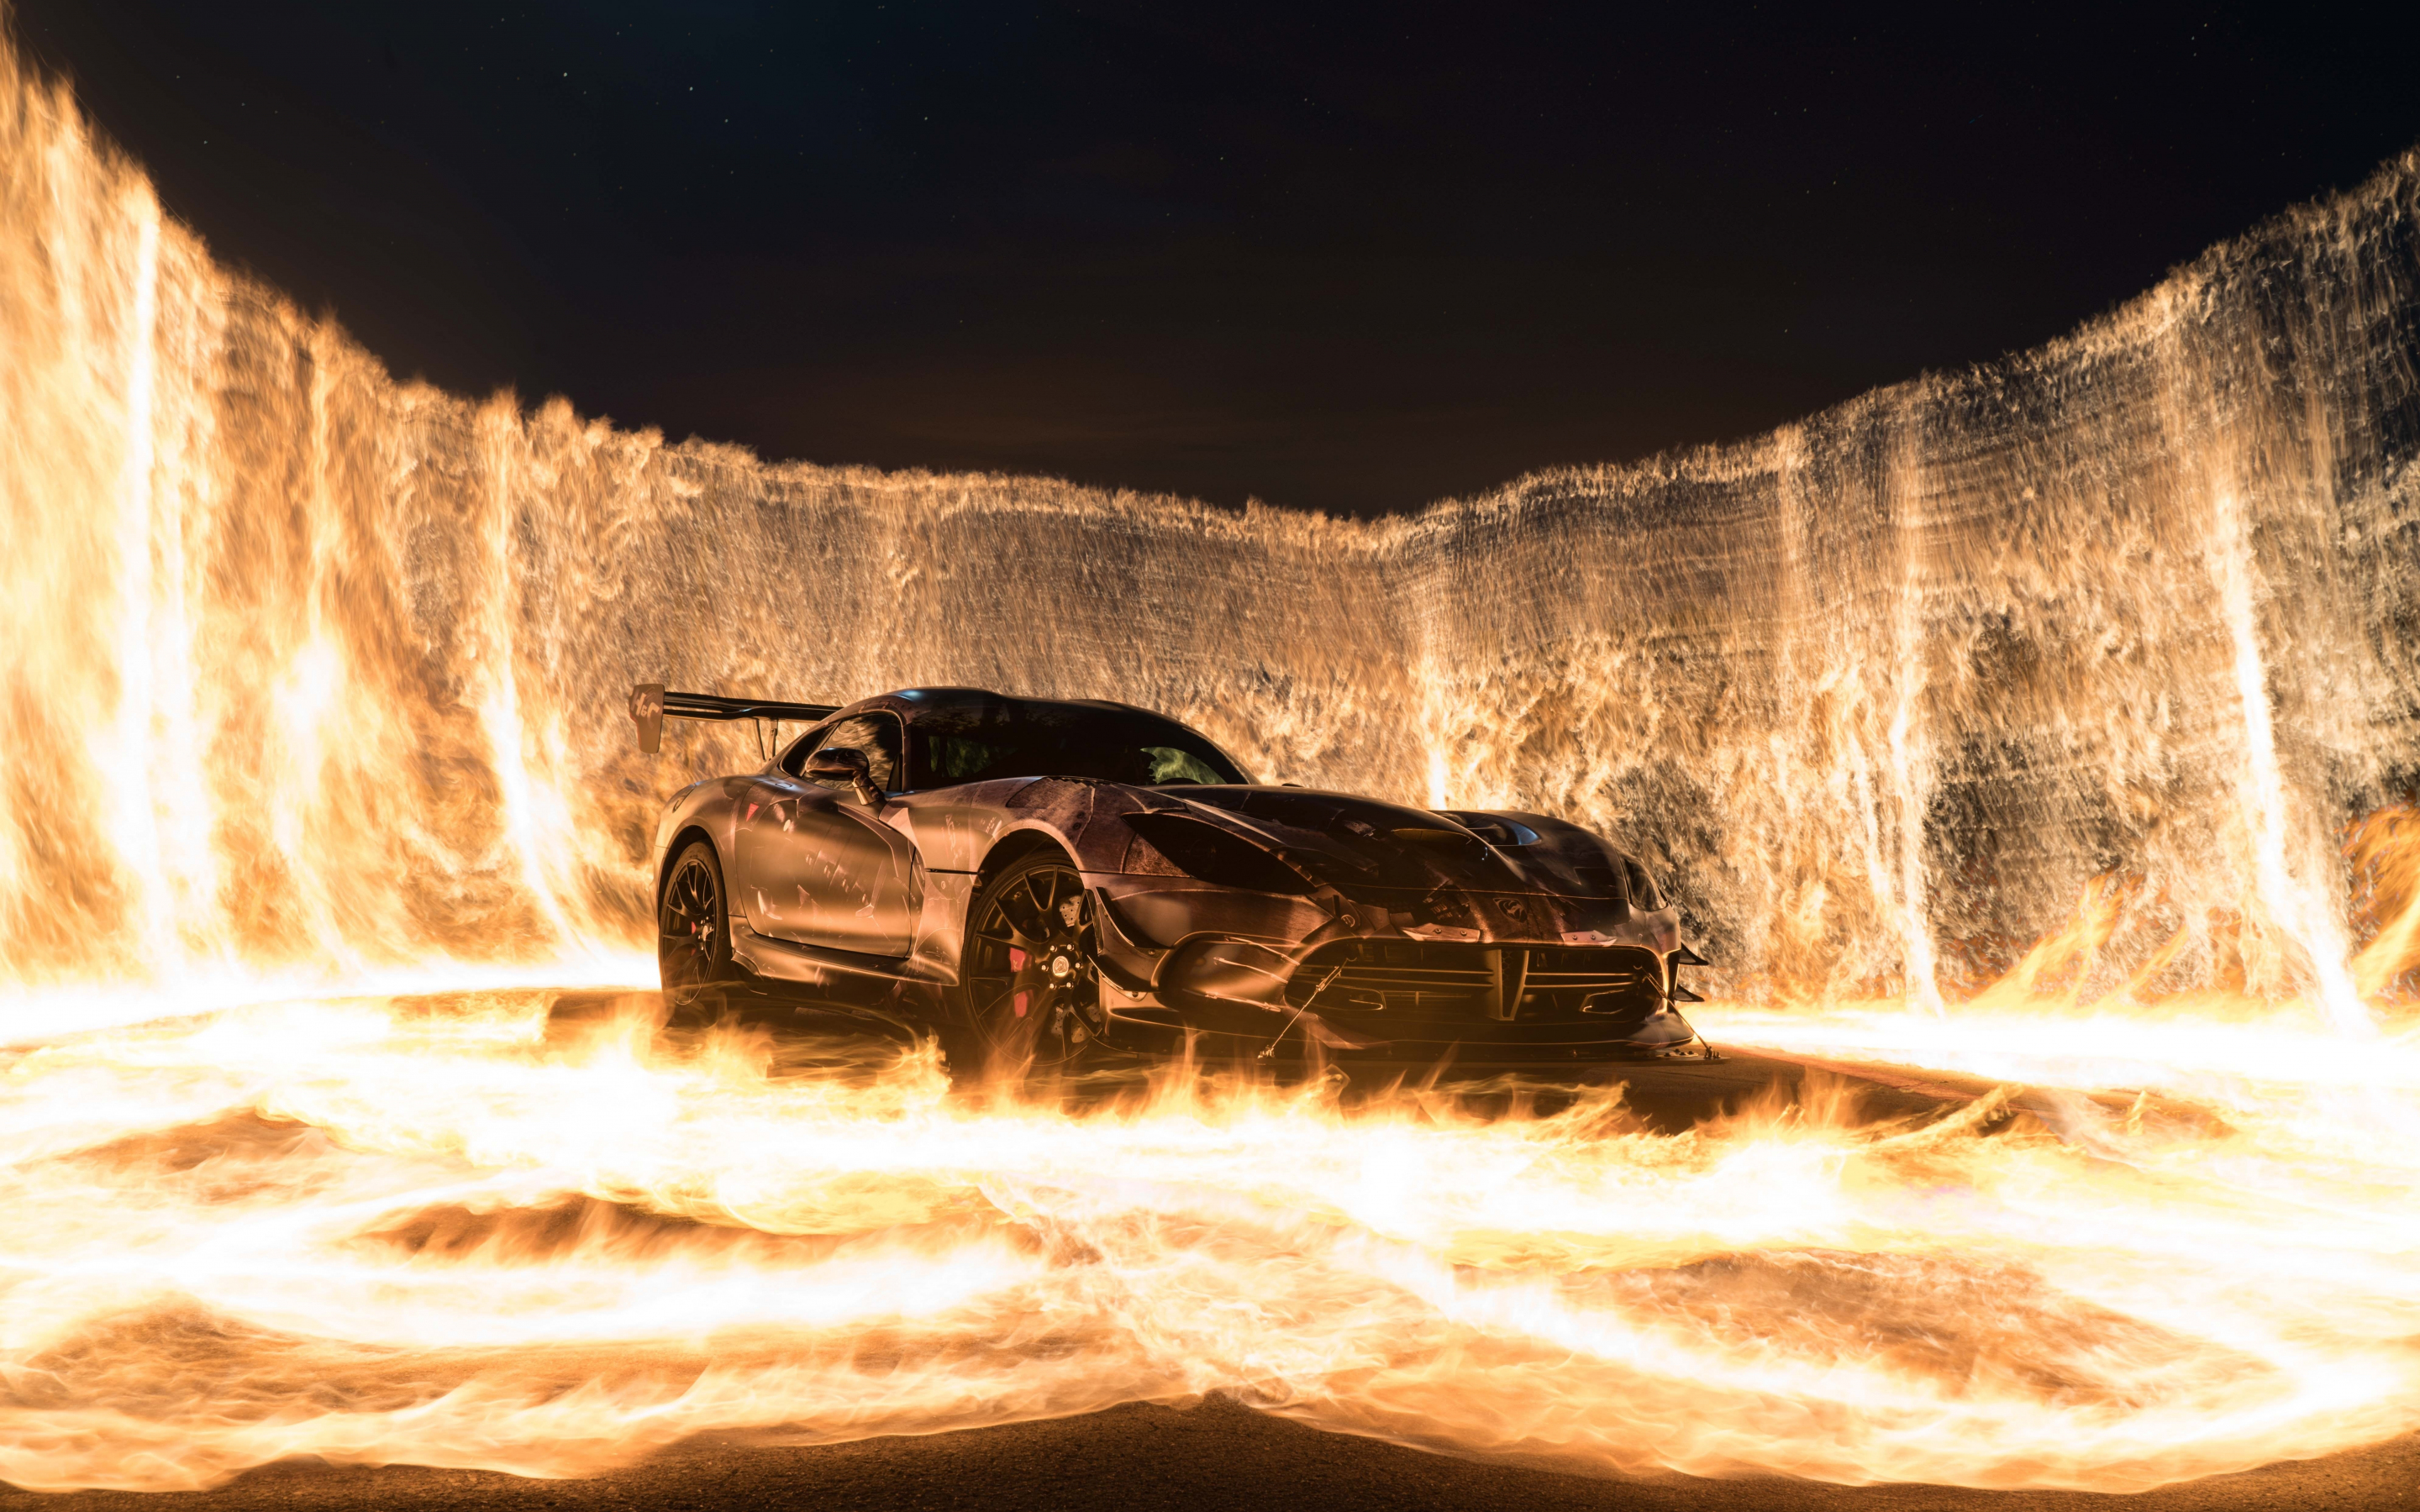 Sports car, car on fire, 2880x1800 wallpaper